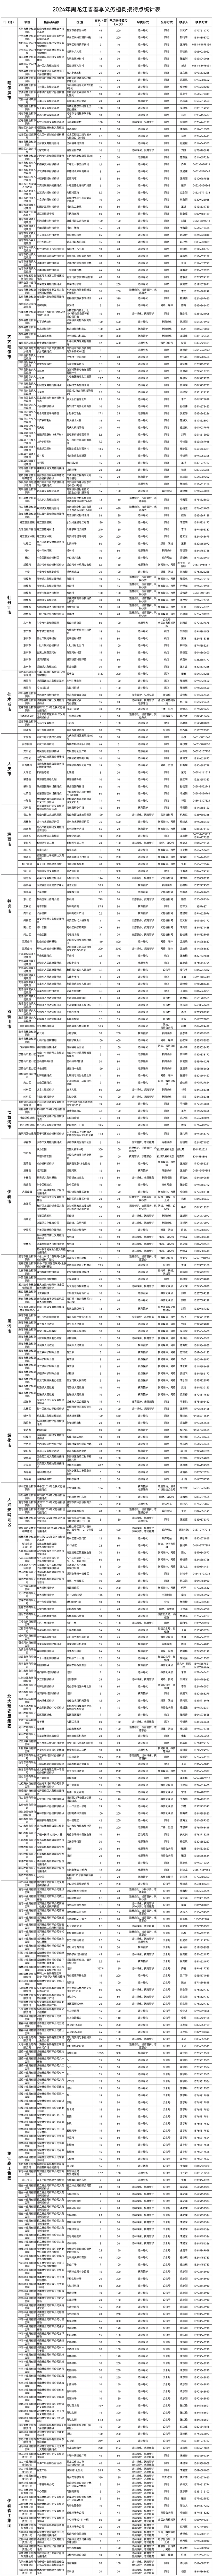 2024年黑龙江省春季义务植树接待点统计表.png